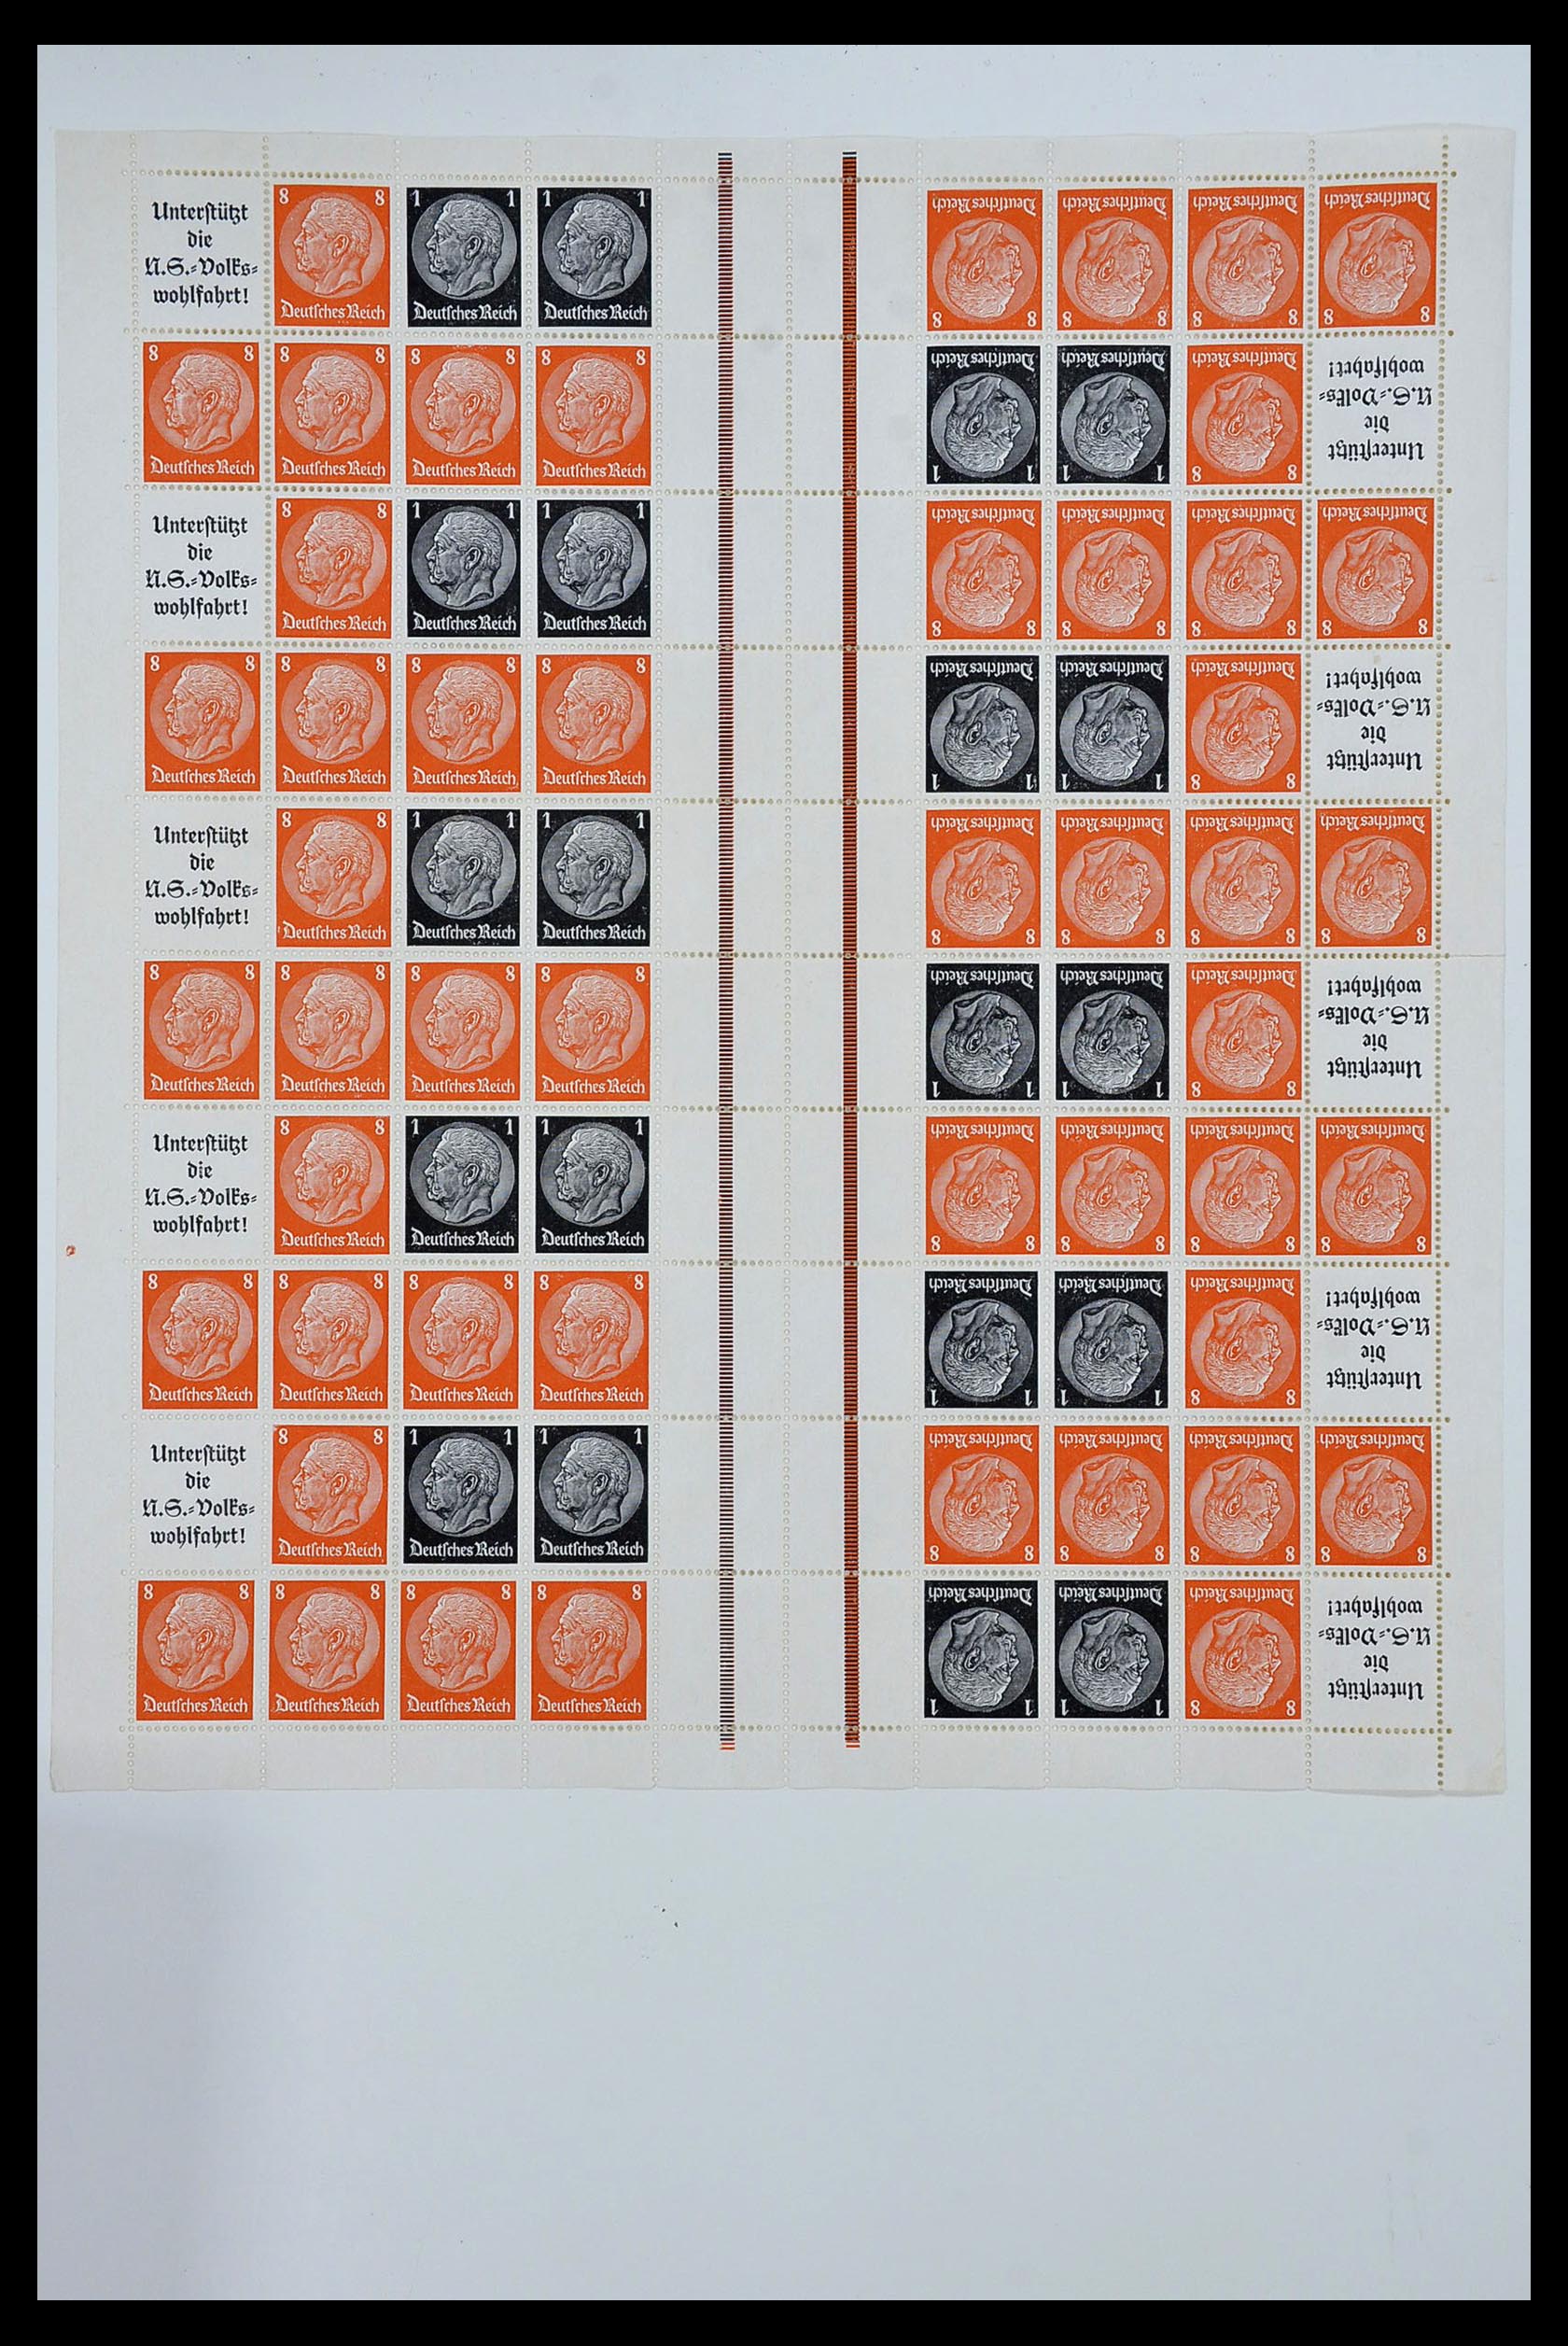 34164 019 - Stamp collection 34164 German Reich Markenheftchenbogen 1933-1942.